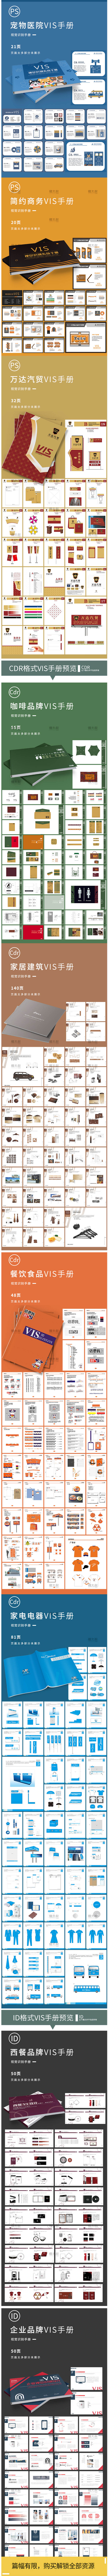 9999套企业视觉识别品牌vi手册模板AI作品集作业CDR设计PSD样机ID素材 设计素材 第3张